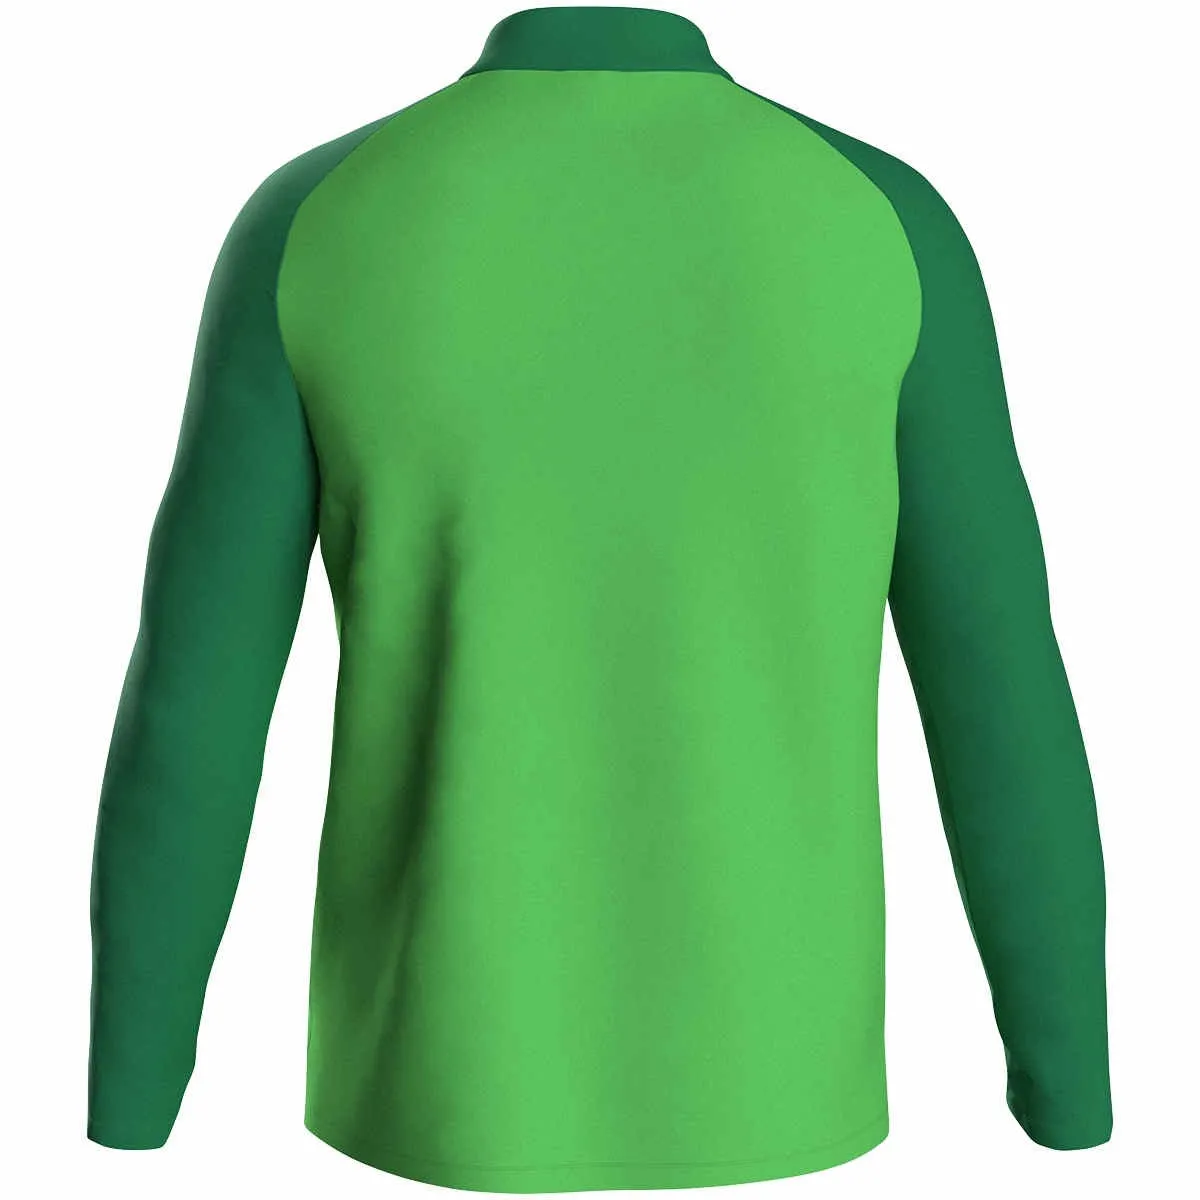 JAKO polyesterjakke Iconic soft green/sport green